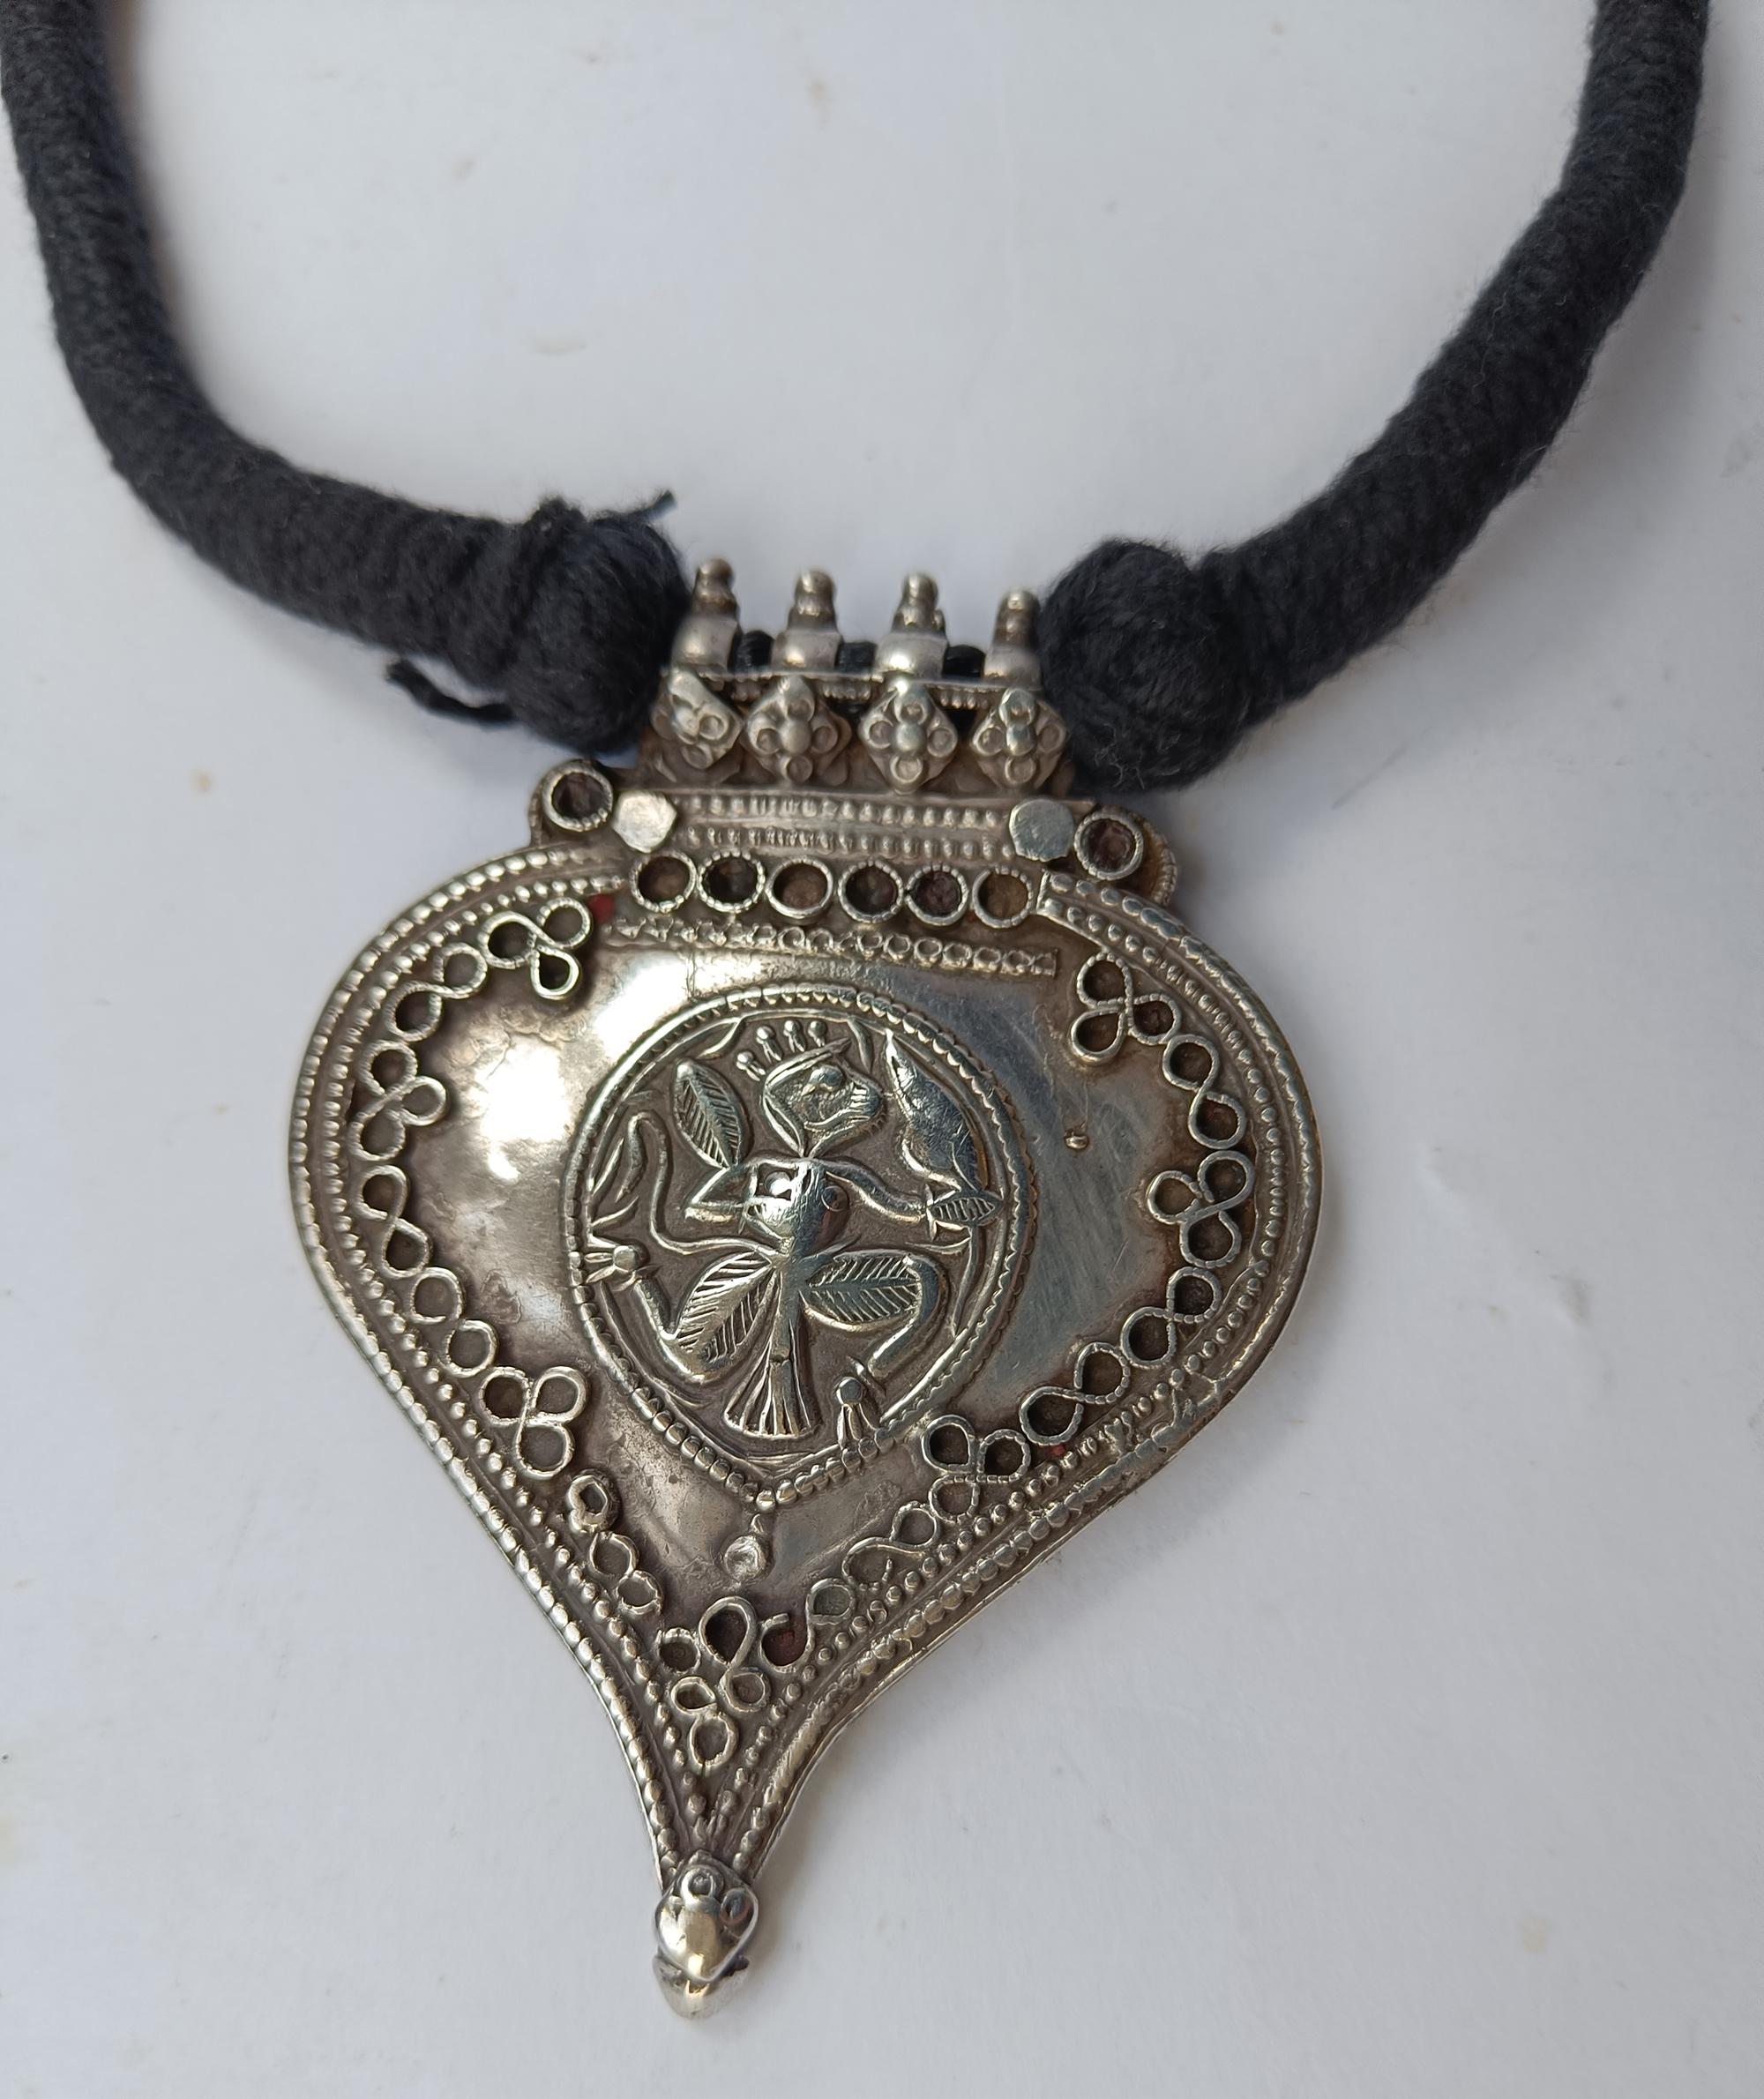 Antike indische Hindu Silber Amulett Halskette 
Zeitraum 19. Jahrhundert
Hochwertiges Silber  
Anhänger Länge 8 x 6   cm  Gewicht 60 Gramm
Zustand: Gut.
Restrung auf Baumwolle.
 
 
